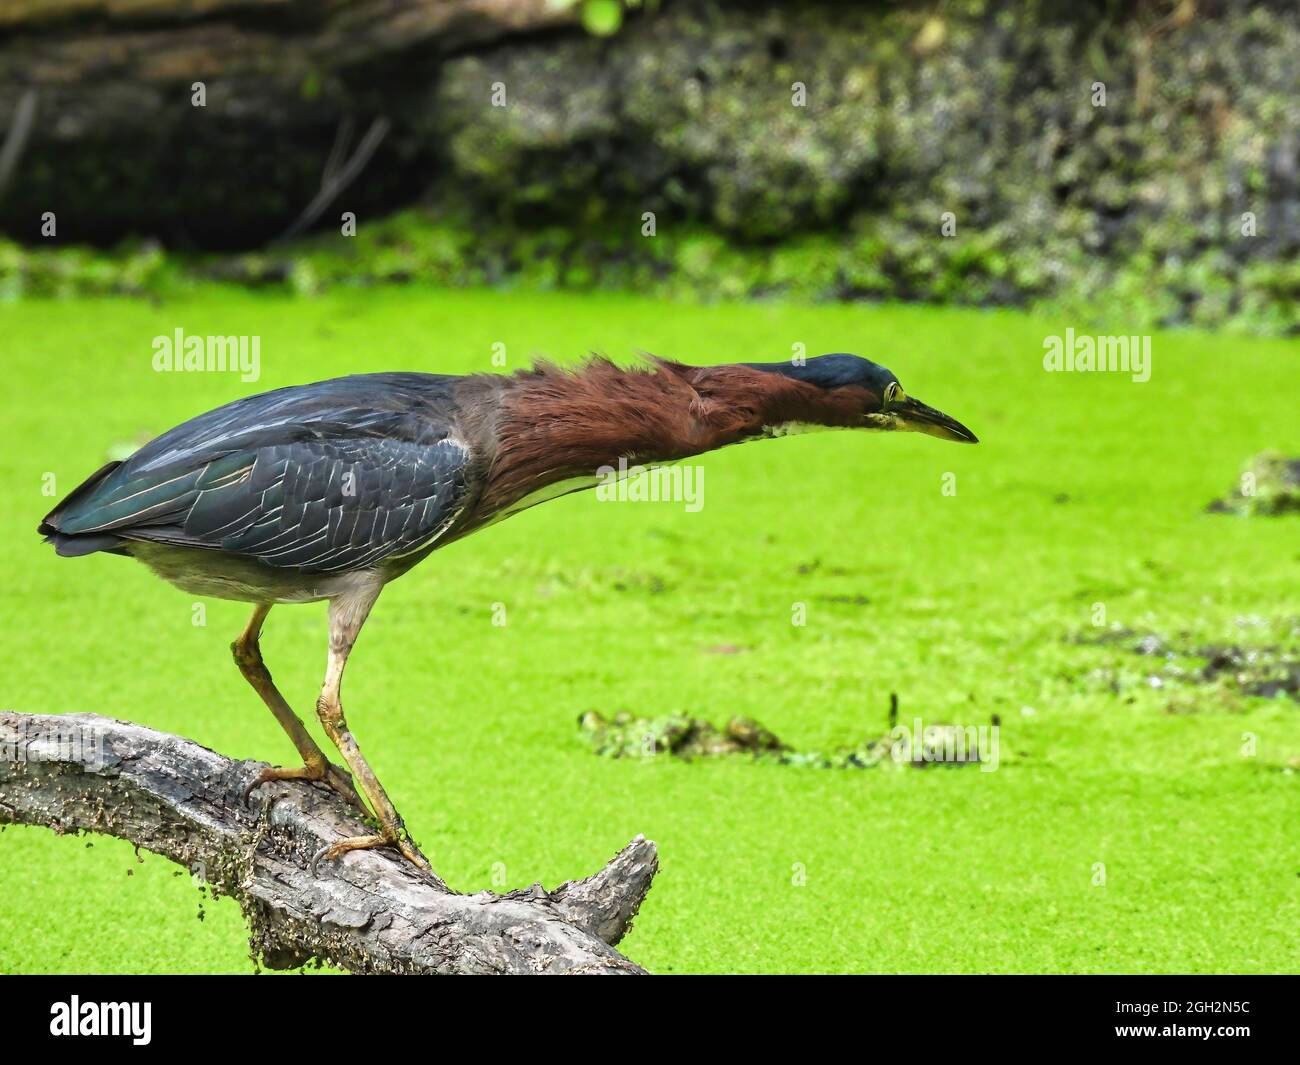 Grünreiher Angeln: Ein grüner Reiher Vogel geht in auffallende Position auf einem toten Baumstamm, der in einem mit Entenkraut bedeckten Teich angelt wird Stockfoto